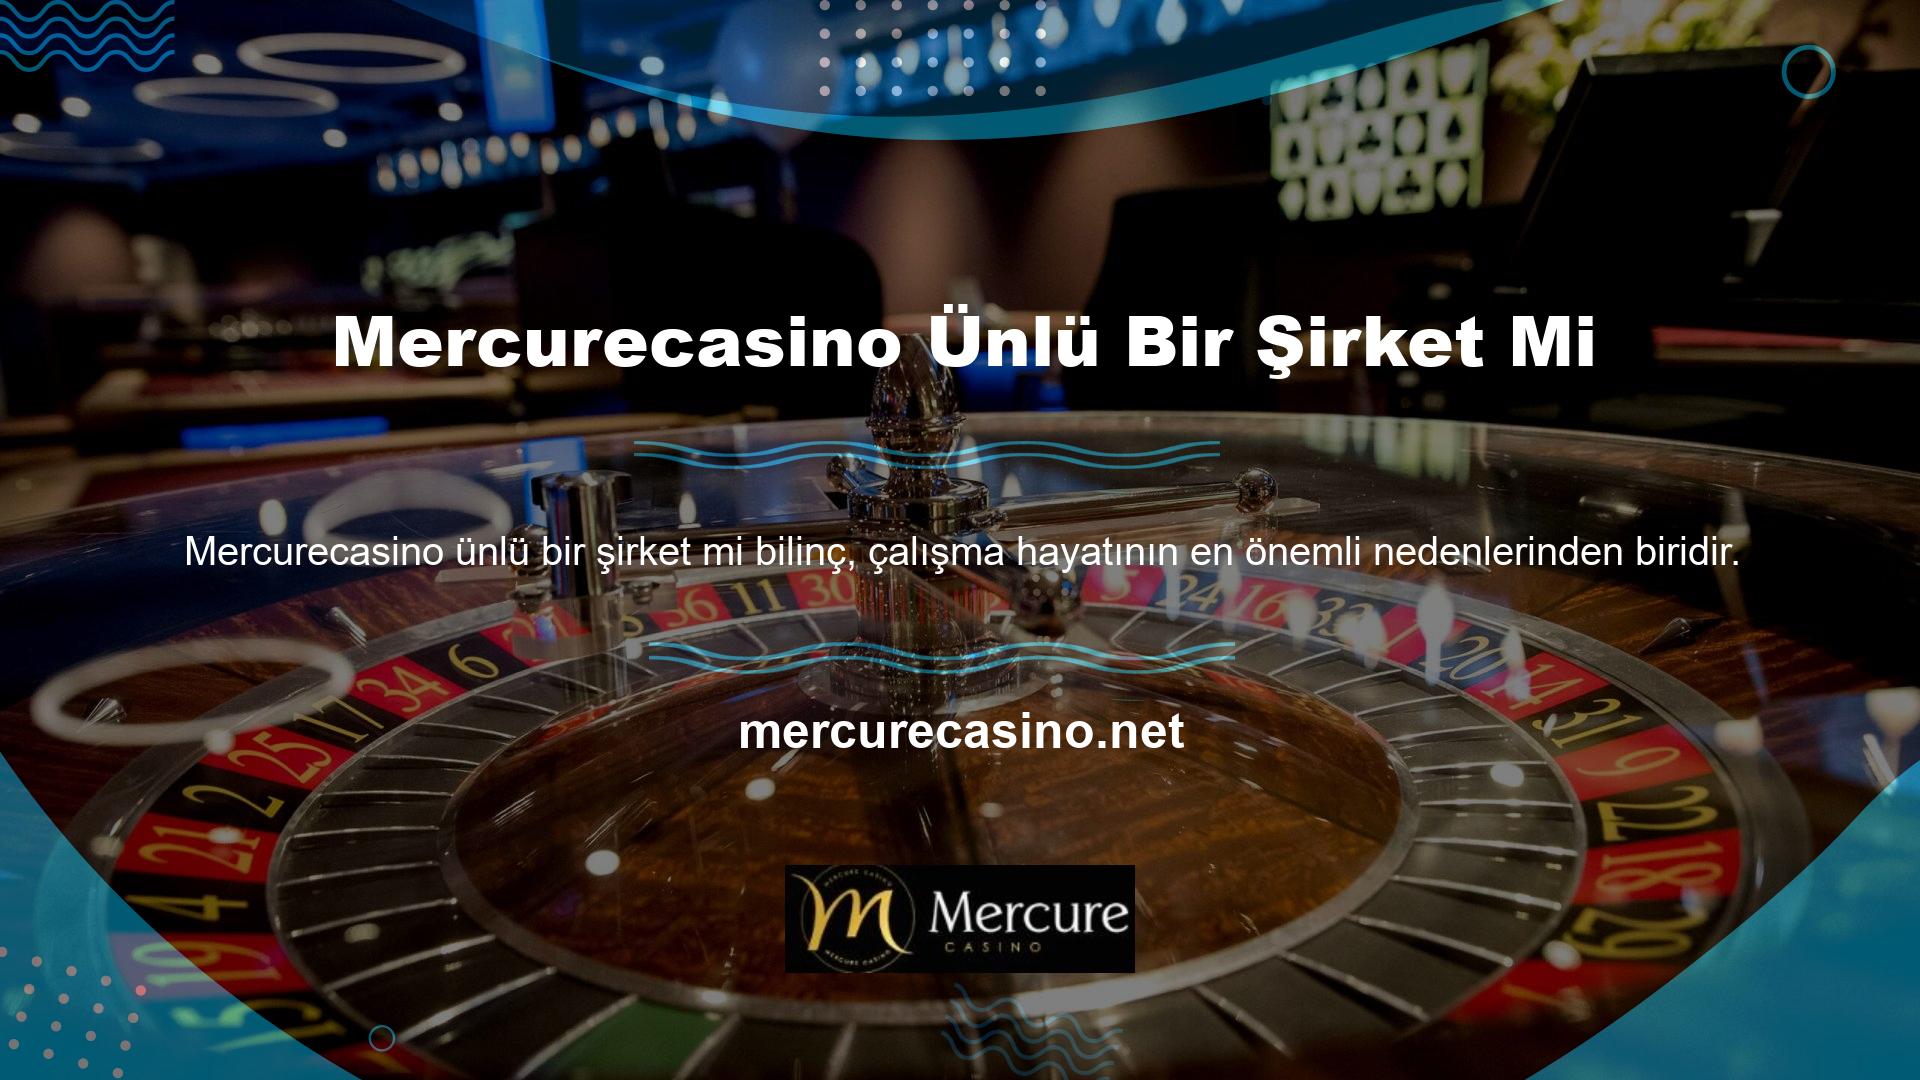 Mercurecasino Ticari, marka bilinirliğini artırmak için reklama büyük yatırım yapıyor